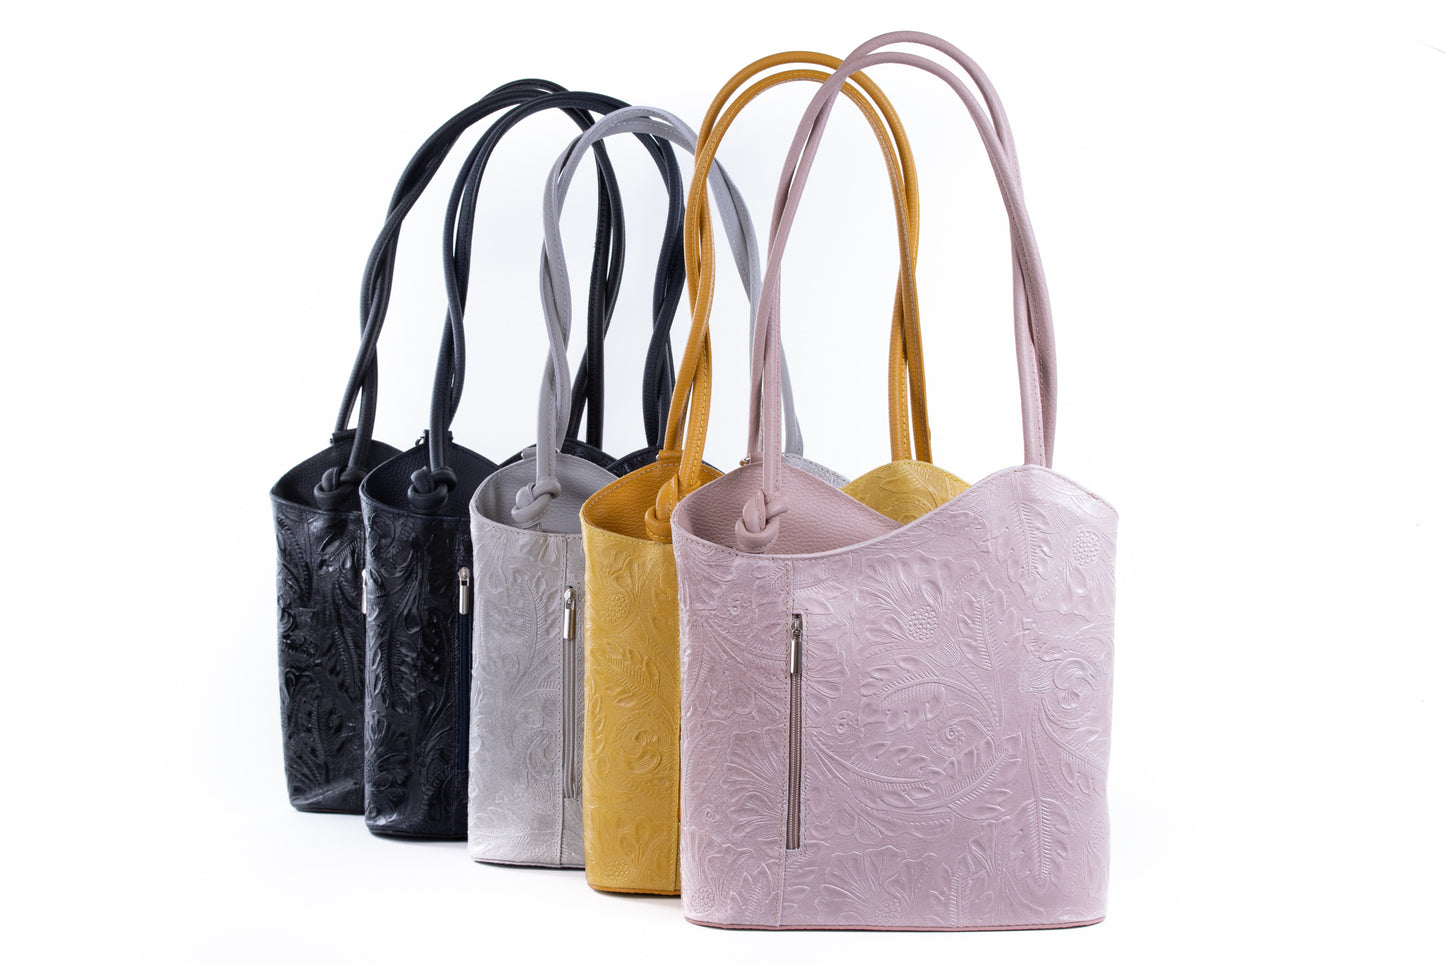 Light Grey Florens Embossed Real Leather Shoulder Backpack Bag - Amilu